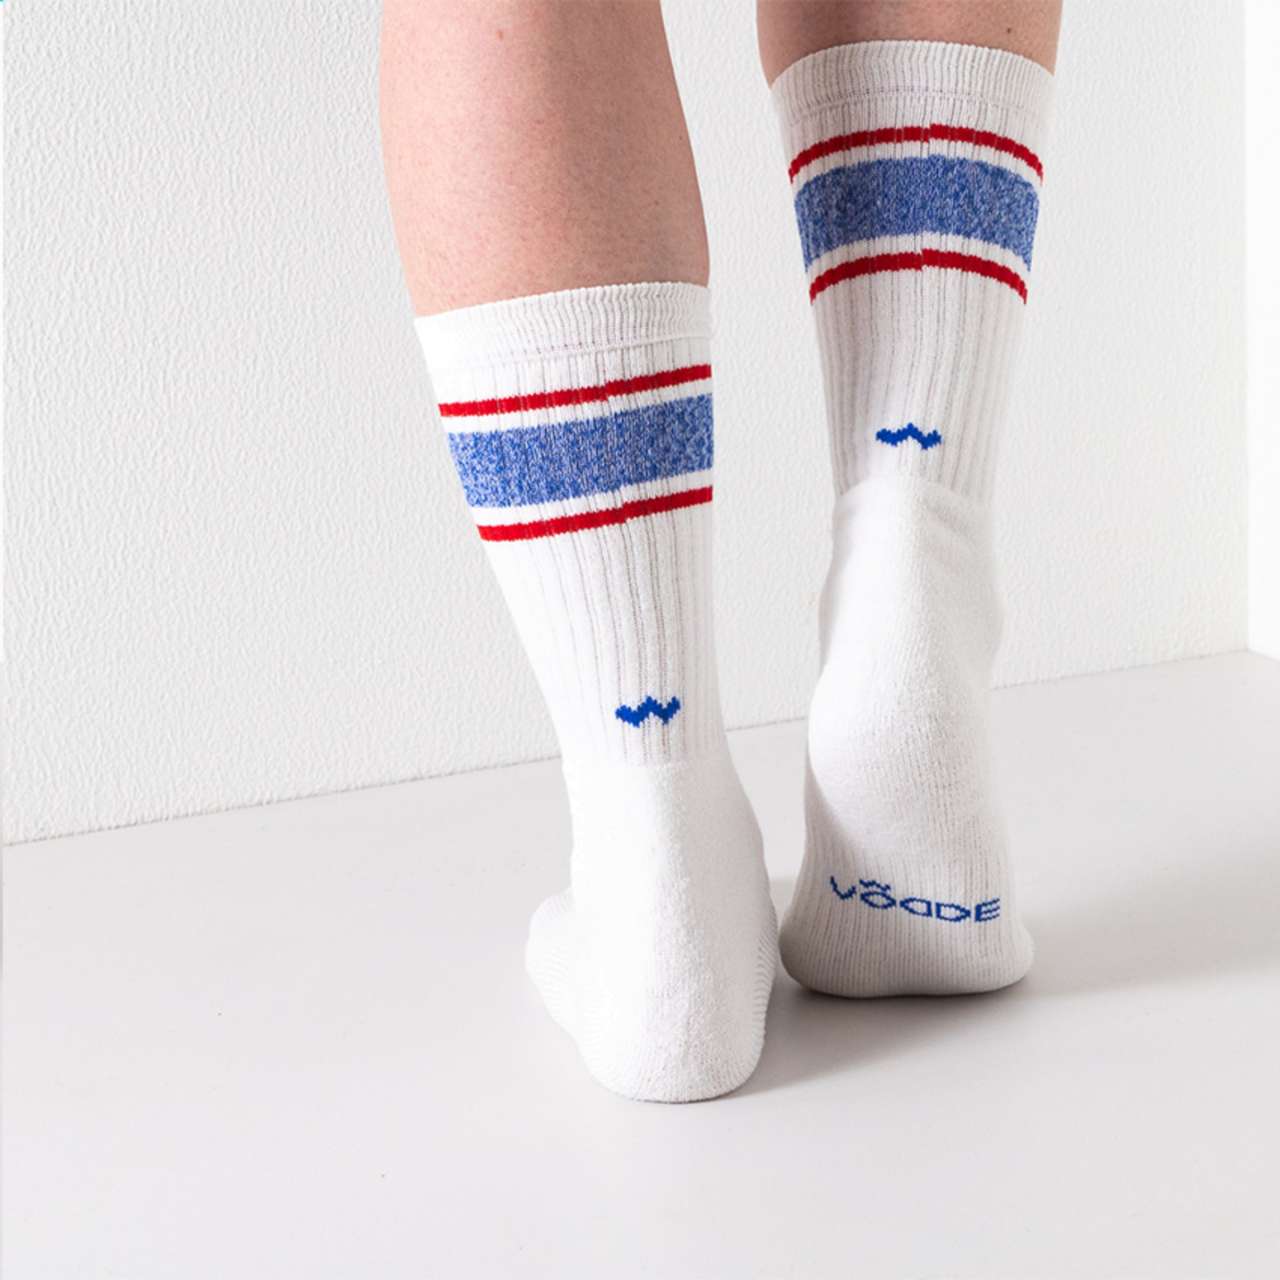 Vodde Recycled Sport Socks Socken